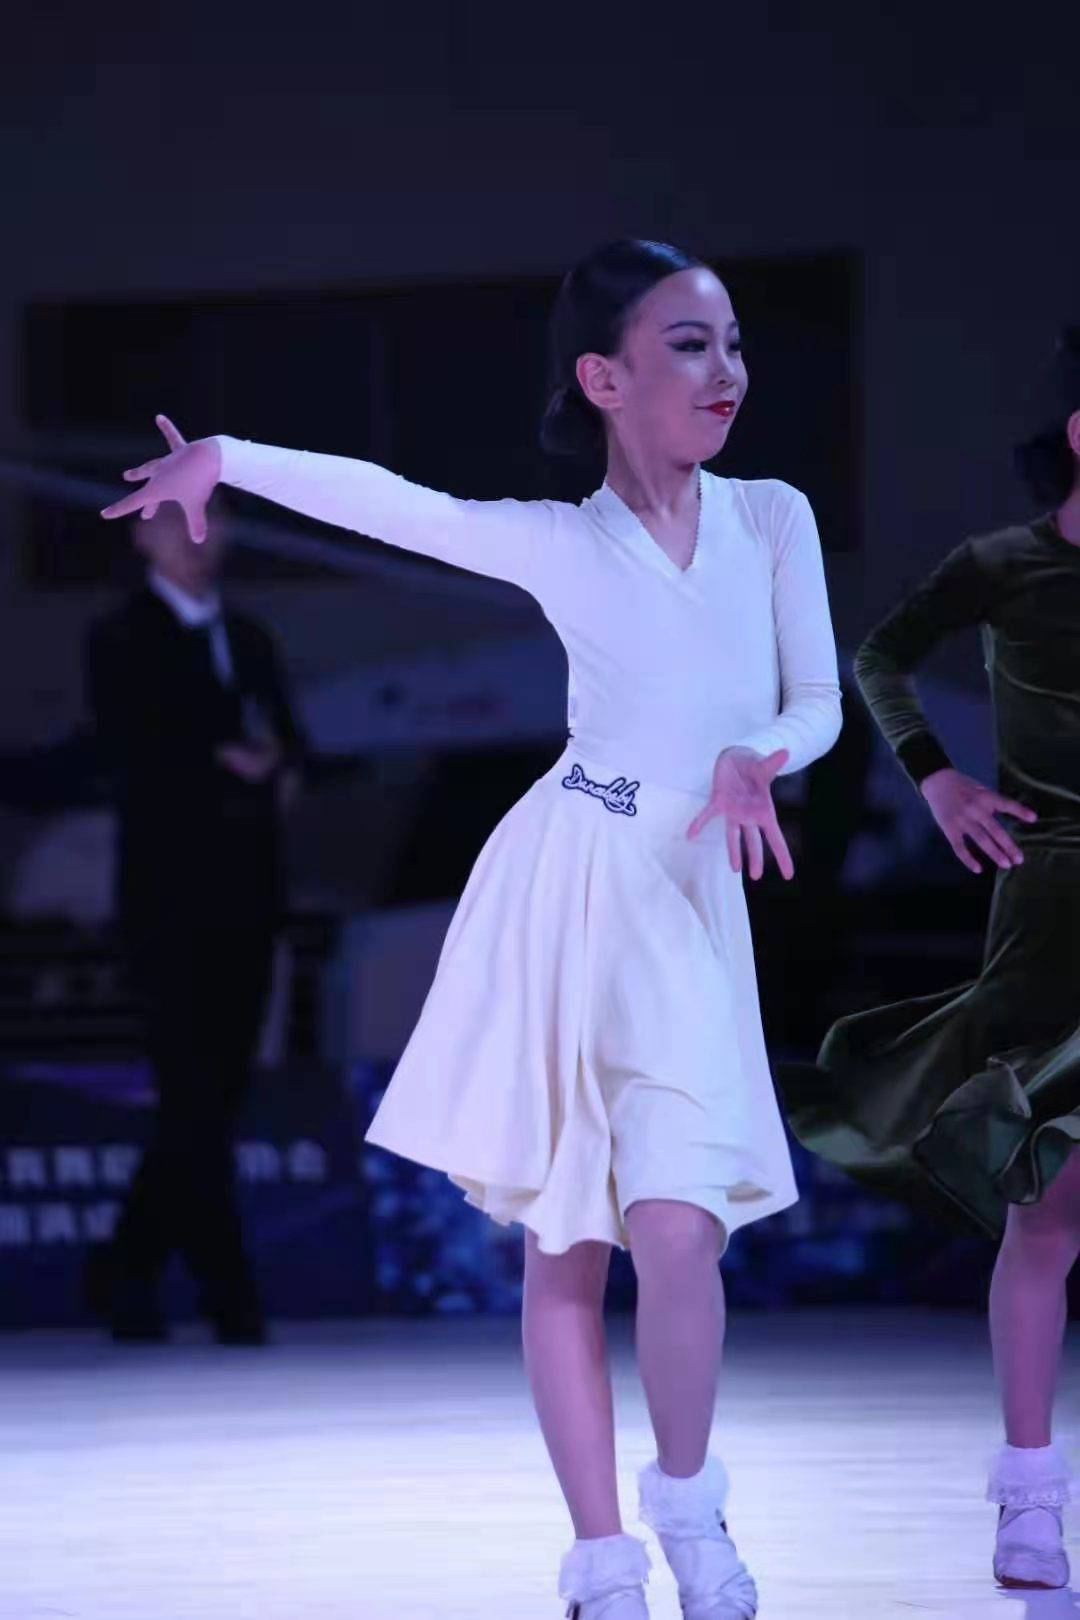 南京黑池舞蹈节2021图片